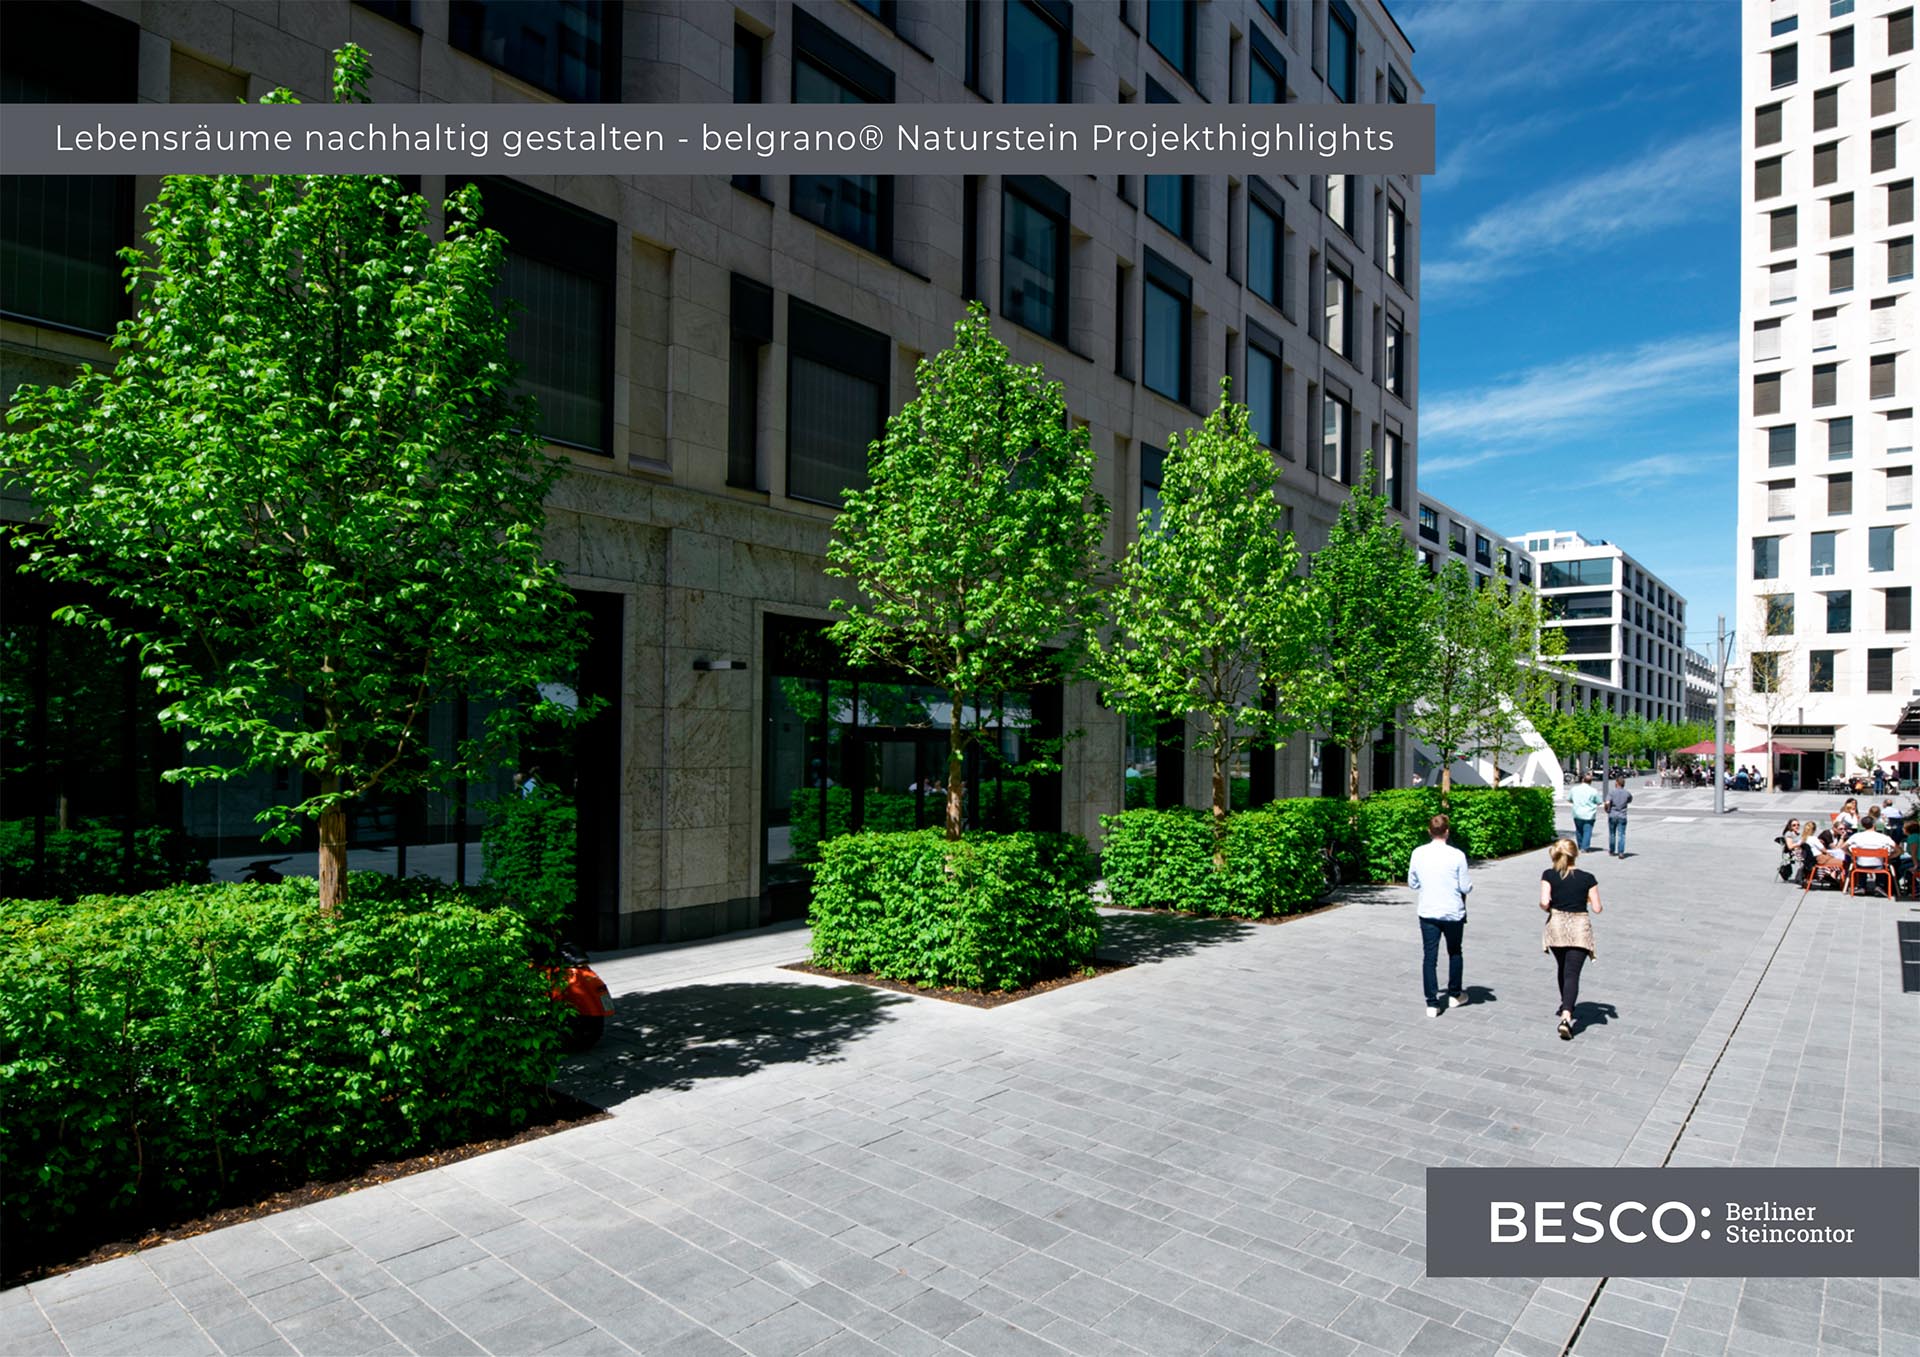 belgrano® Natursteinprojekt Broschüre Außenanlagen 2020